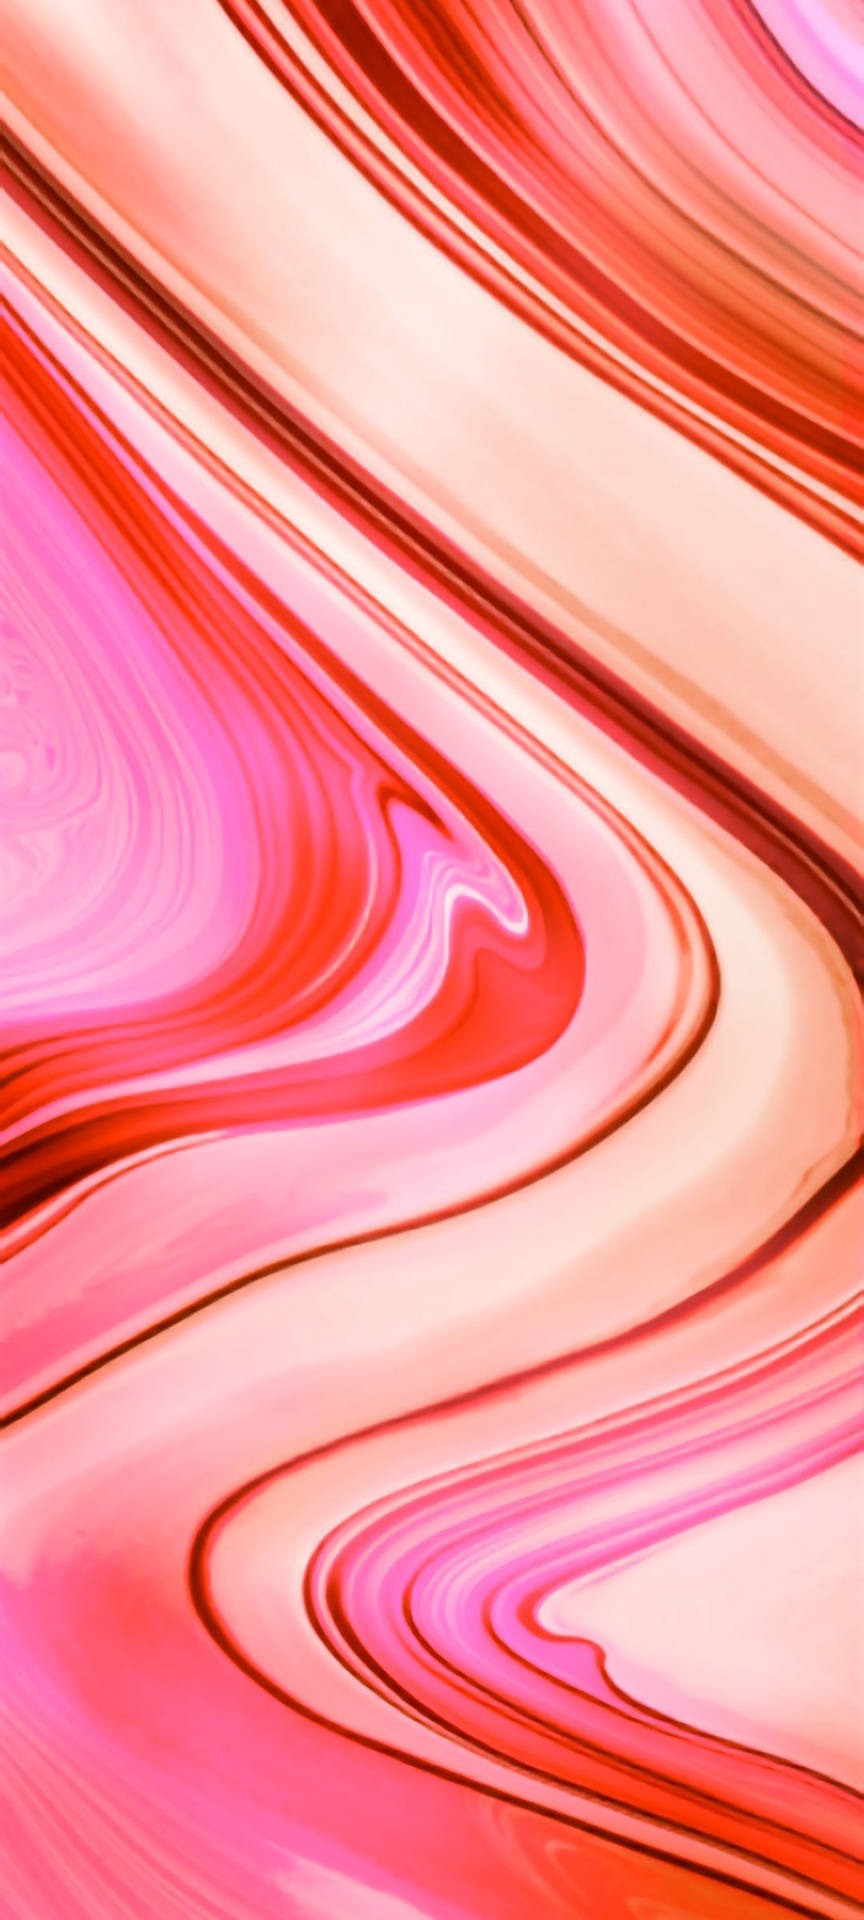 Redmi 9 Colored Liquid Paint Wallpaper